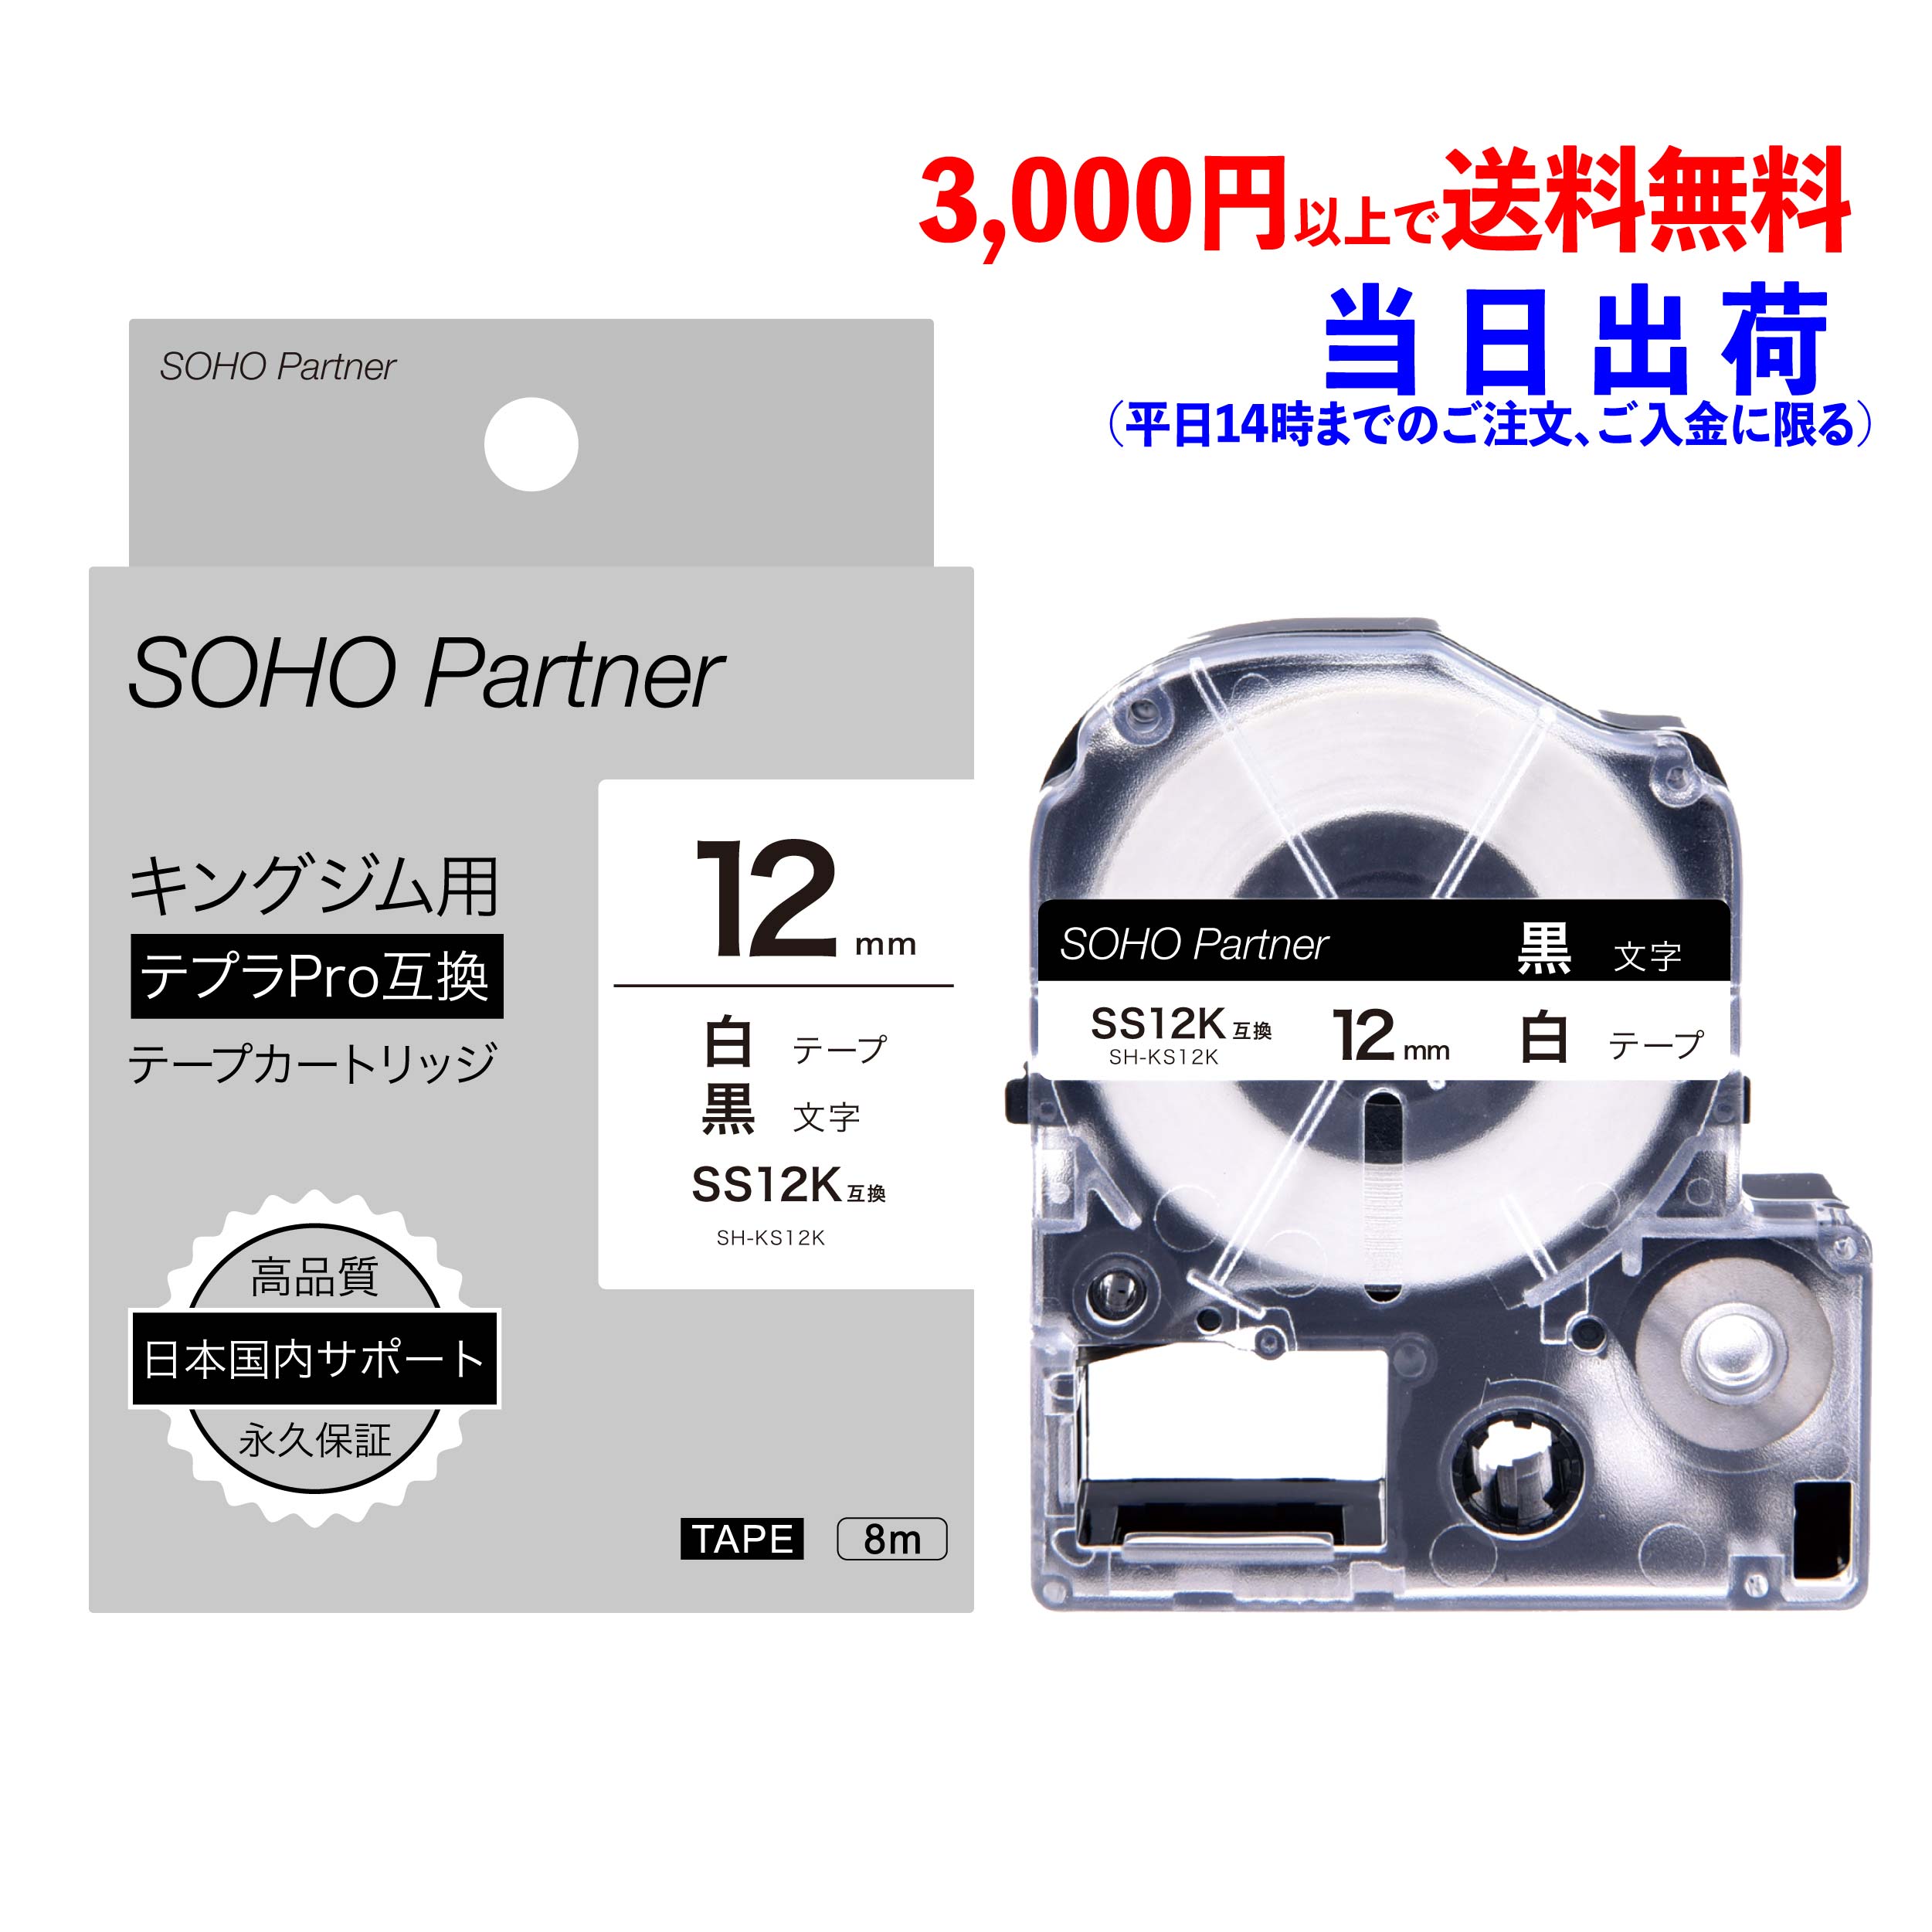 日本 キングジム テプラ PROテープカートリッジ 24mm 白 黒文字 エコ